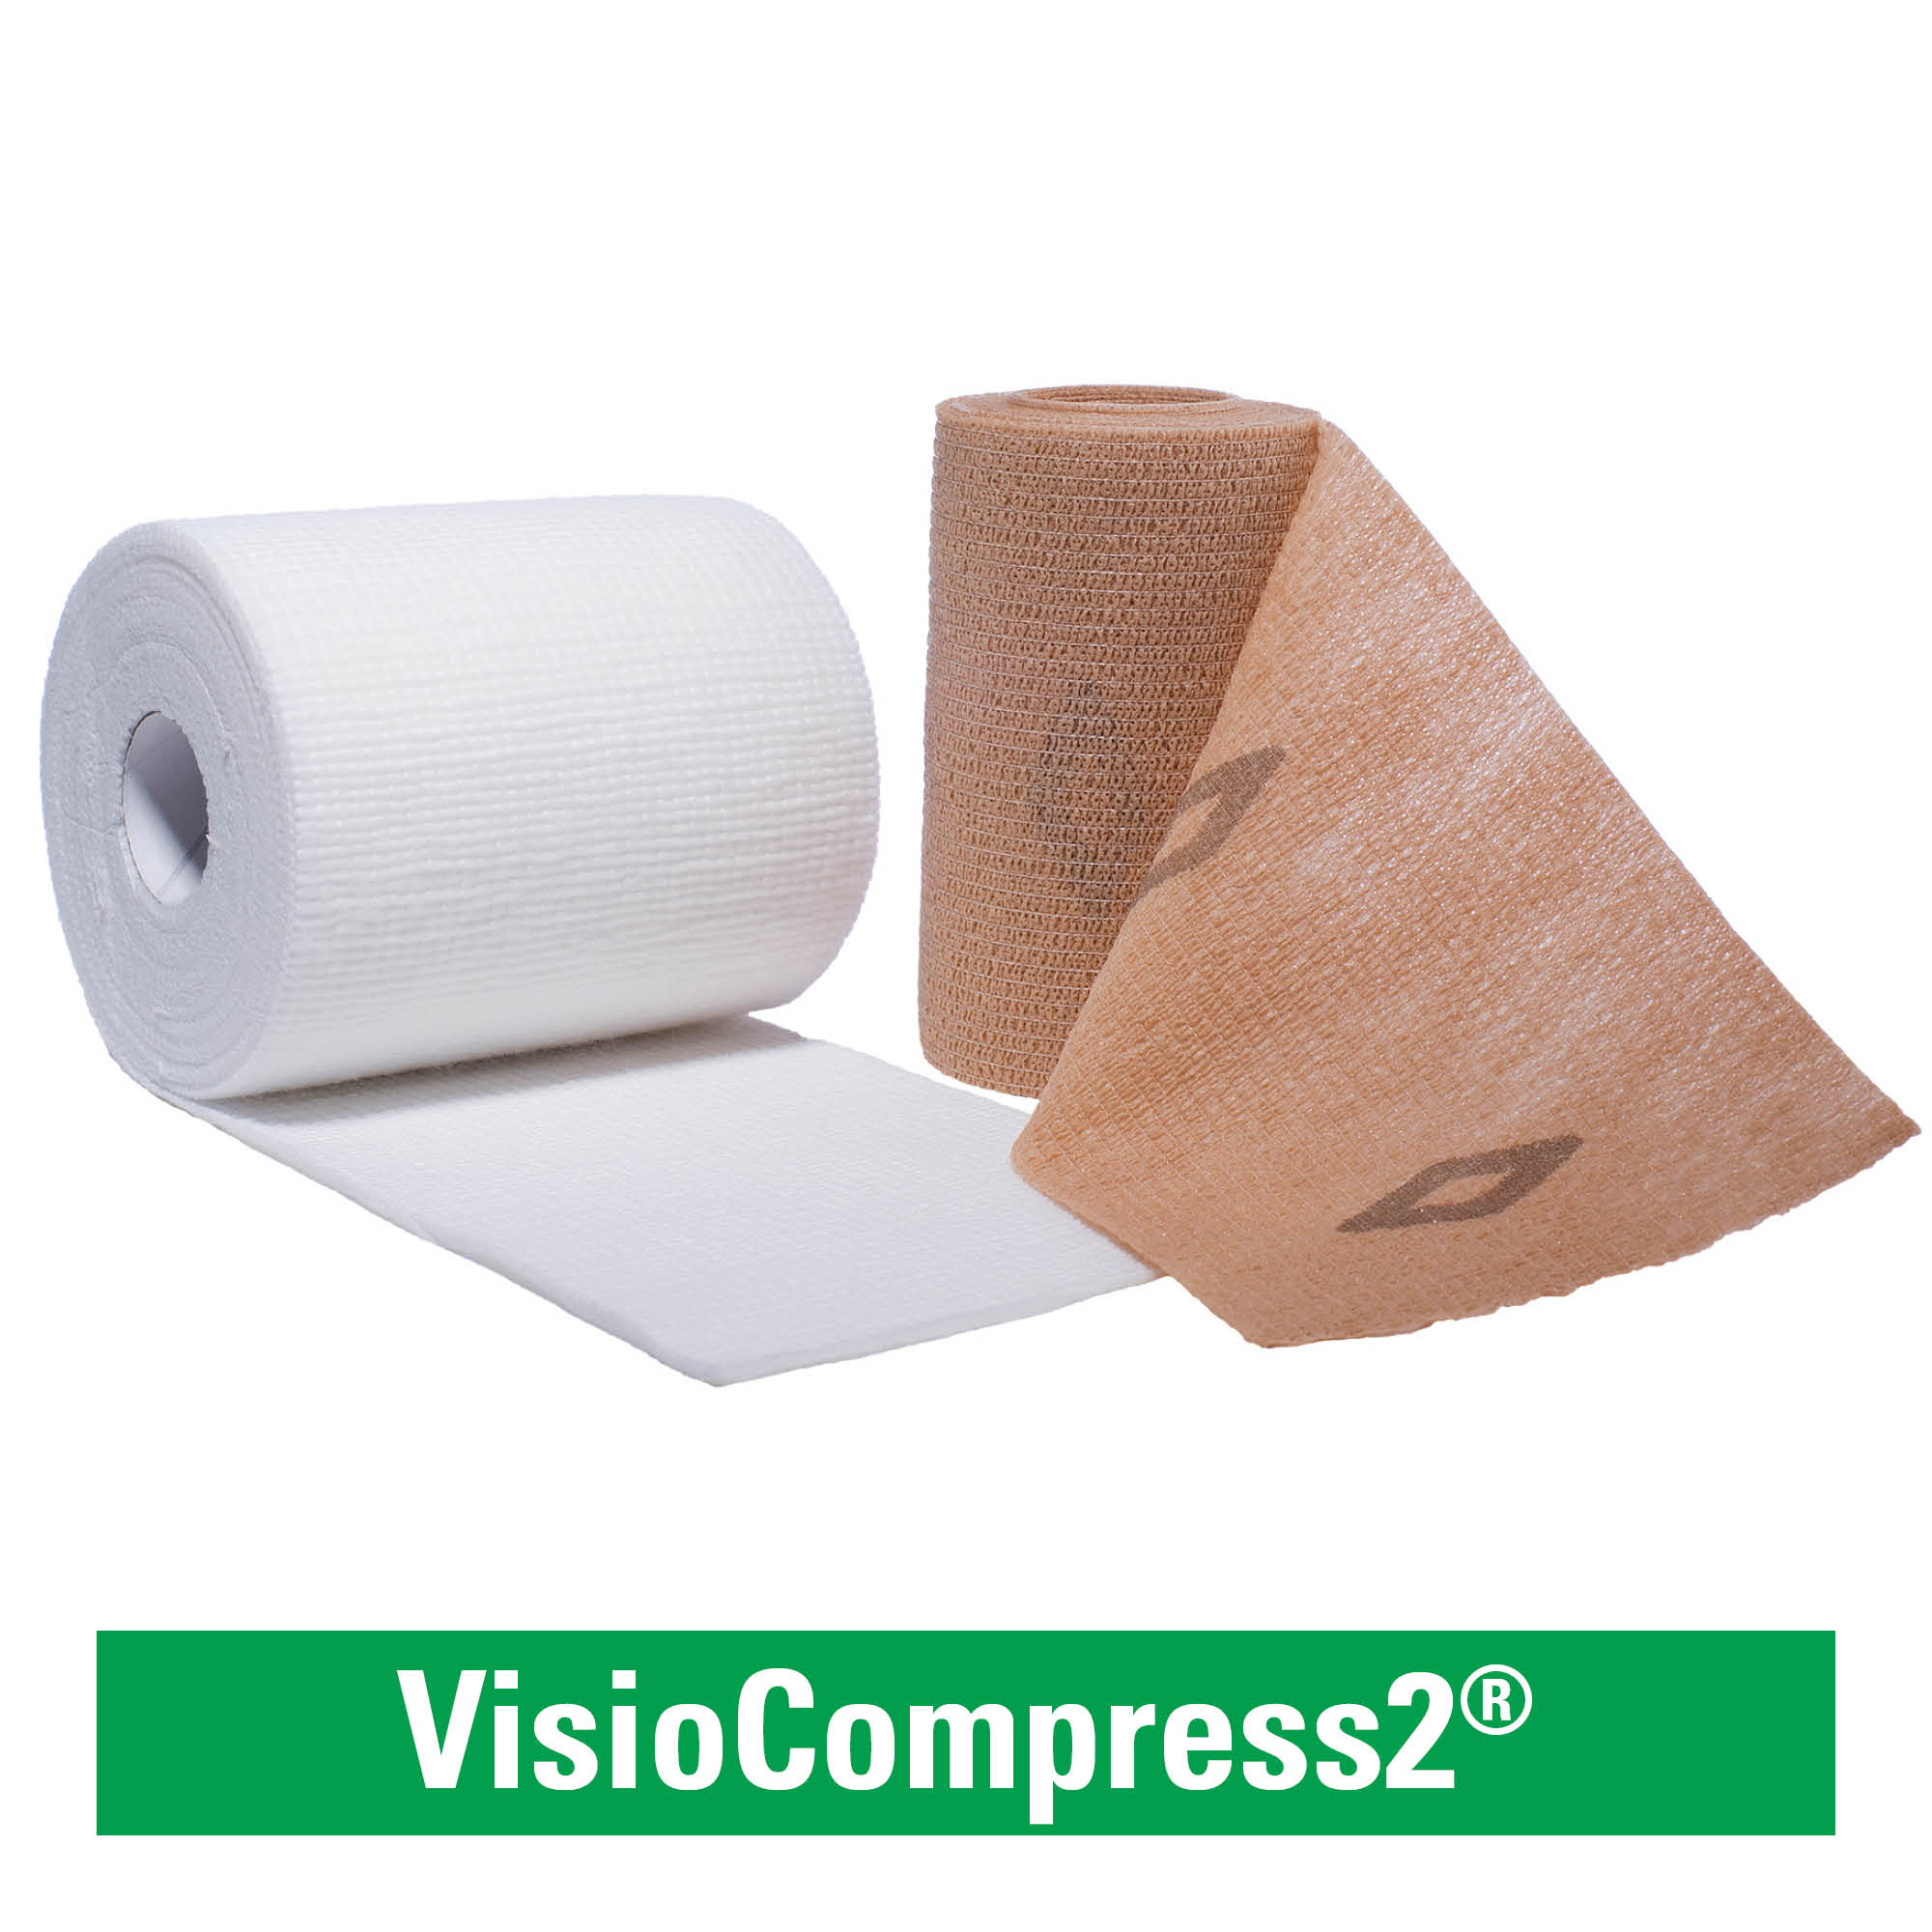 VisioCompress2®